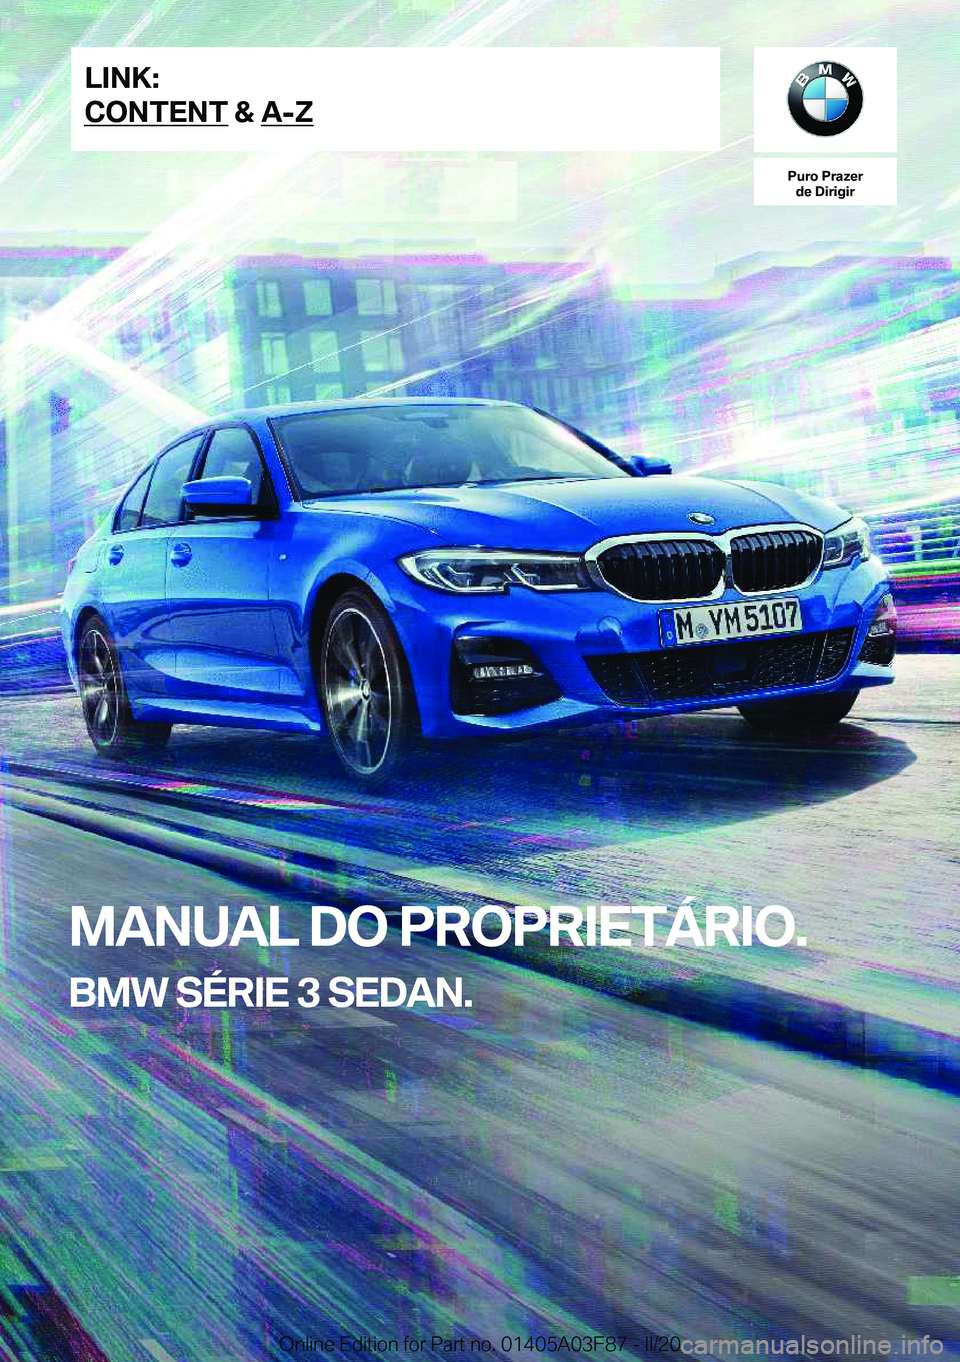 BMW 3 SERIES 2020  Manual do condutor (in Portuguese) �P�u�r�o��P�r�a�z�e�r�d�e��D�i�r�i�g�i�r
�M�A�N�U�A�L��D�O��P�R�O�P�R�I�E�T�Á�R�I�O�.
�B�M�W��S�